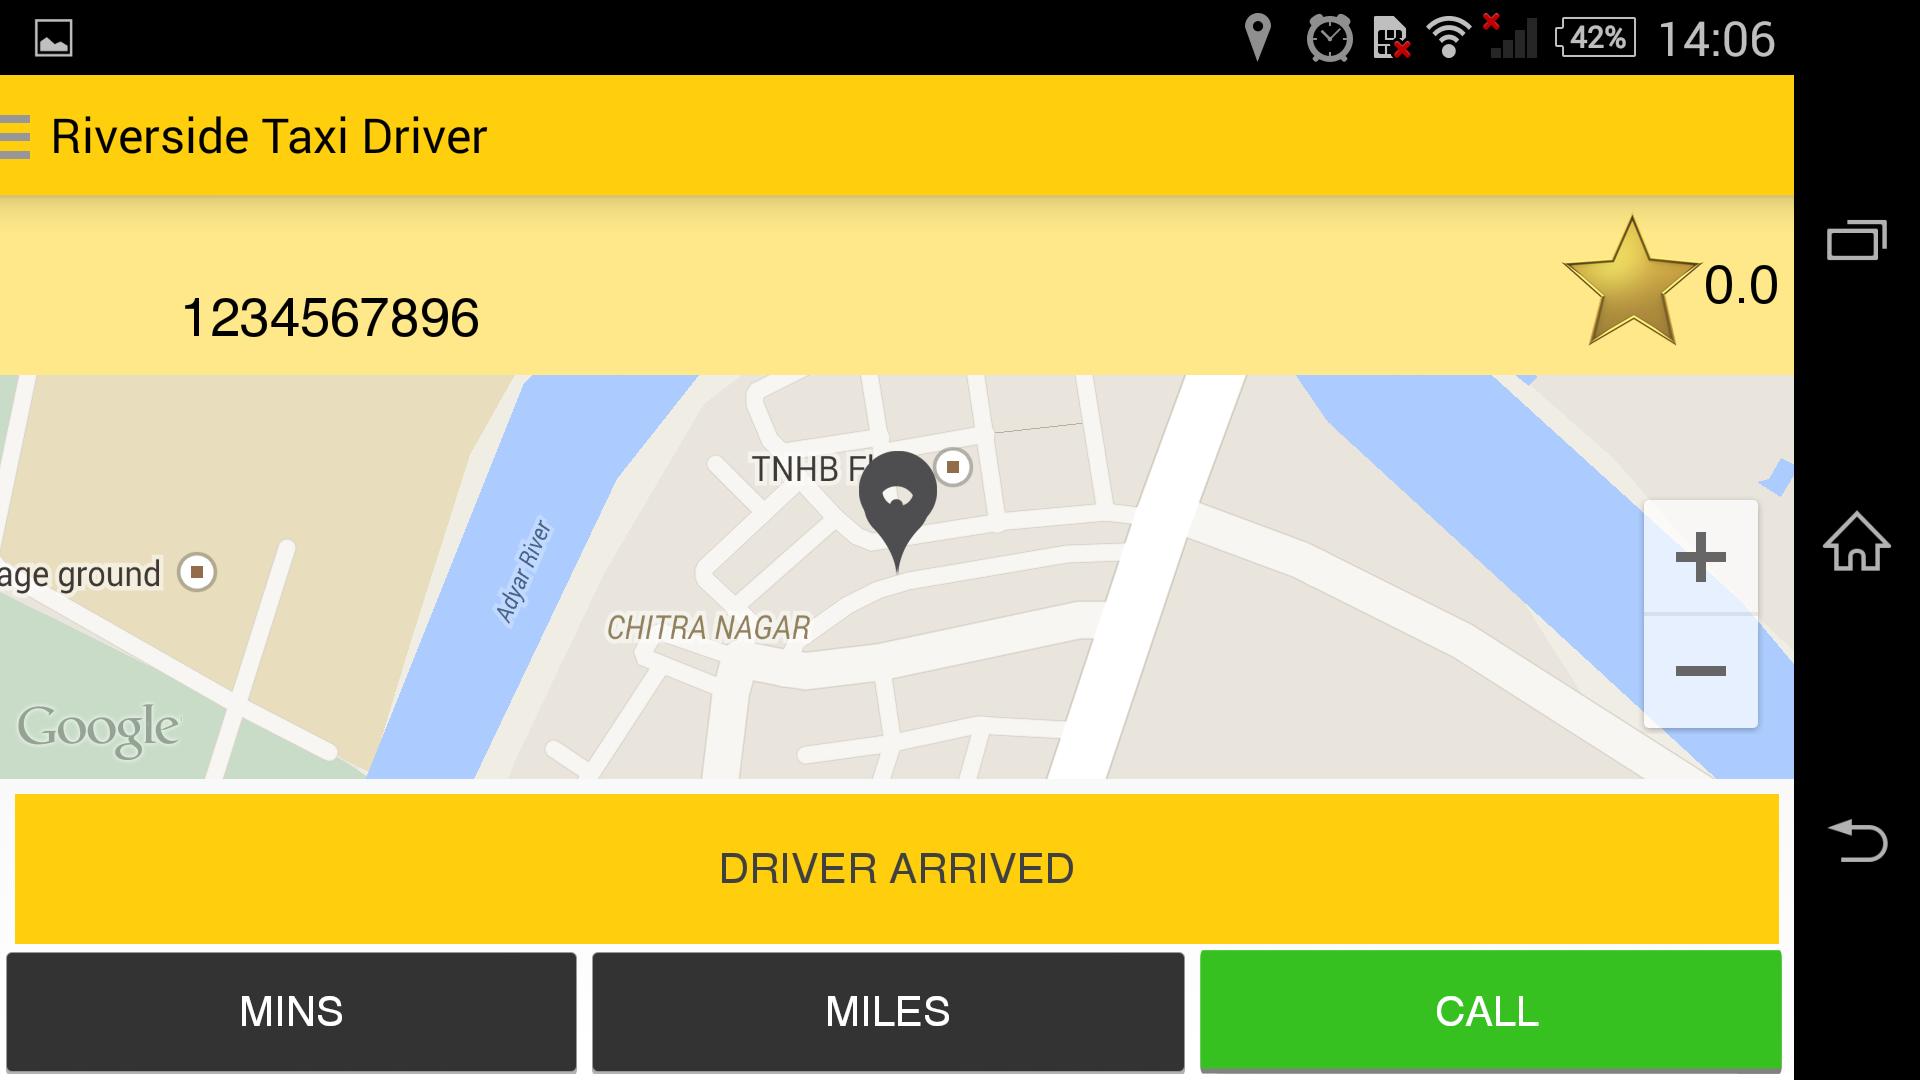 Такси драйвер rfhnf. Как в приложении такси драйвер менять парки. Такси драйвер в каком городе находится. Не показывает карту города такси драйвер.